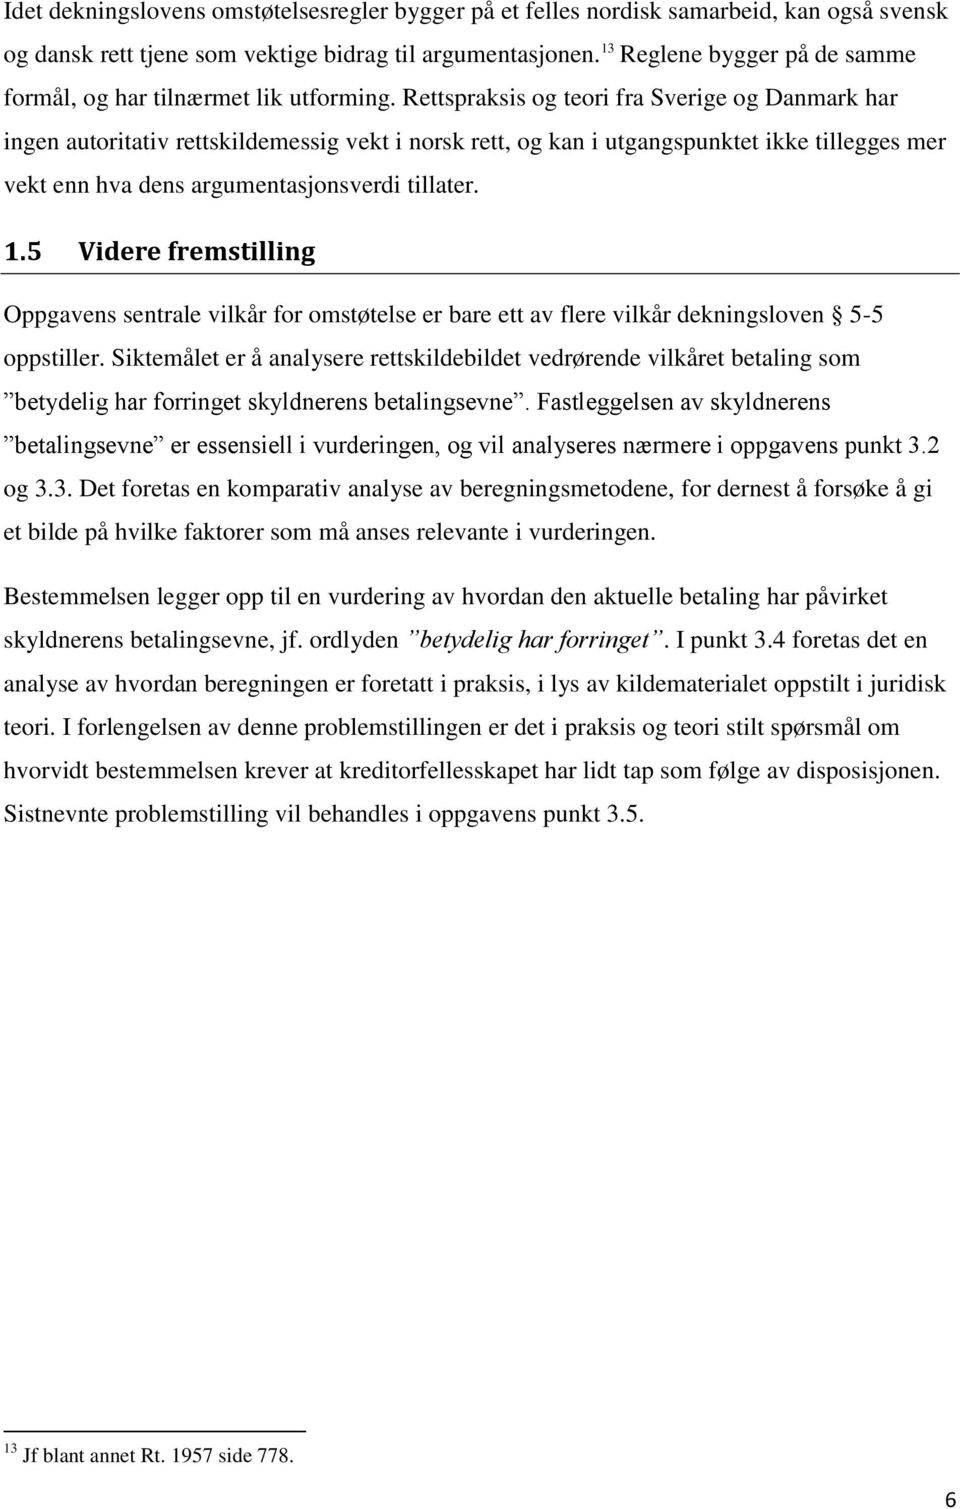 Rettspraksis og teori fra Sverige og Danmark har ingen autoritativ rettskildemessig vekt i norsk rett, og kan i utgangspunktet ikke tillegges mer vekt enn hva dens argumentasjonsverdi tillater. 1.